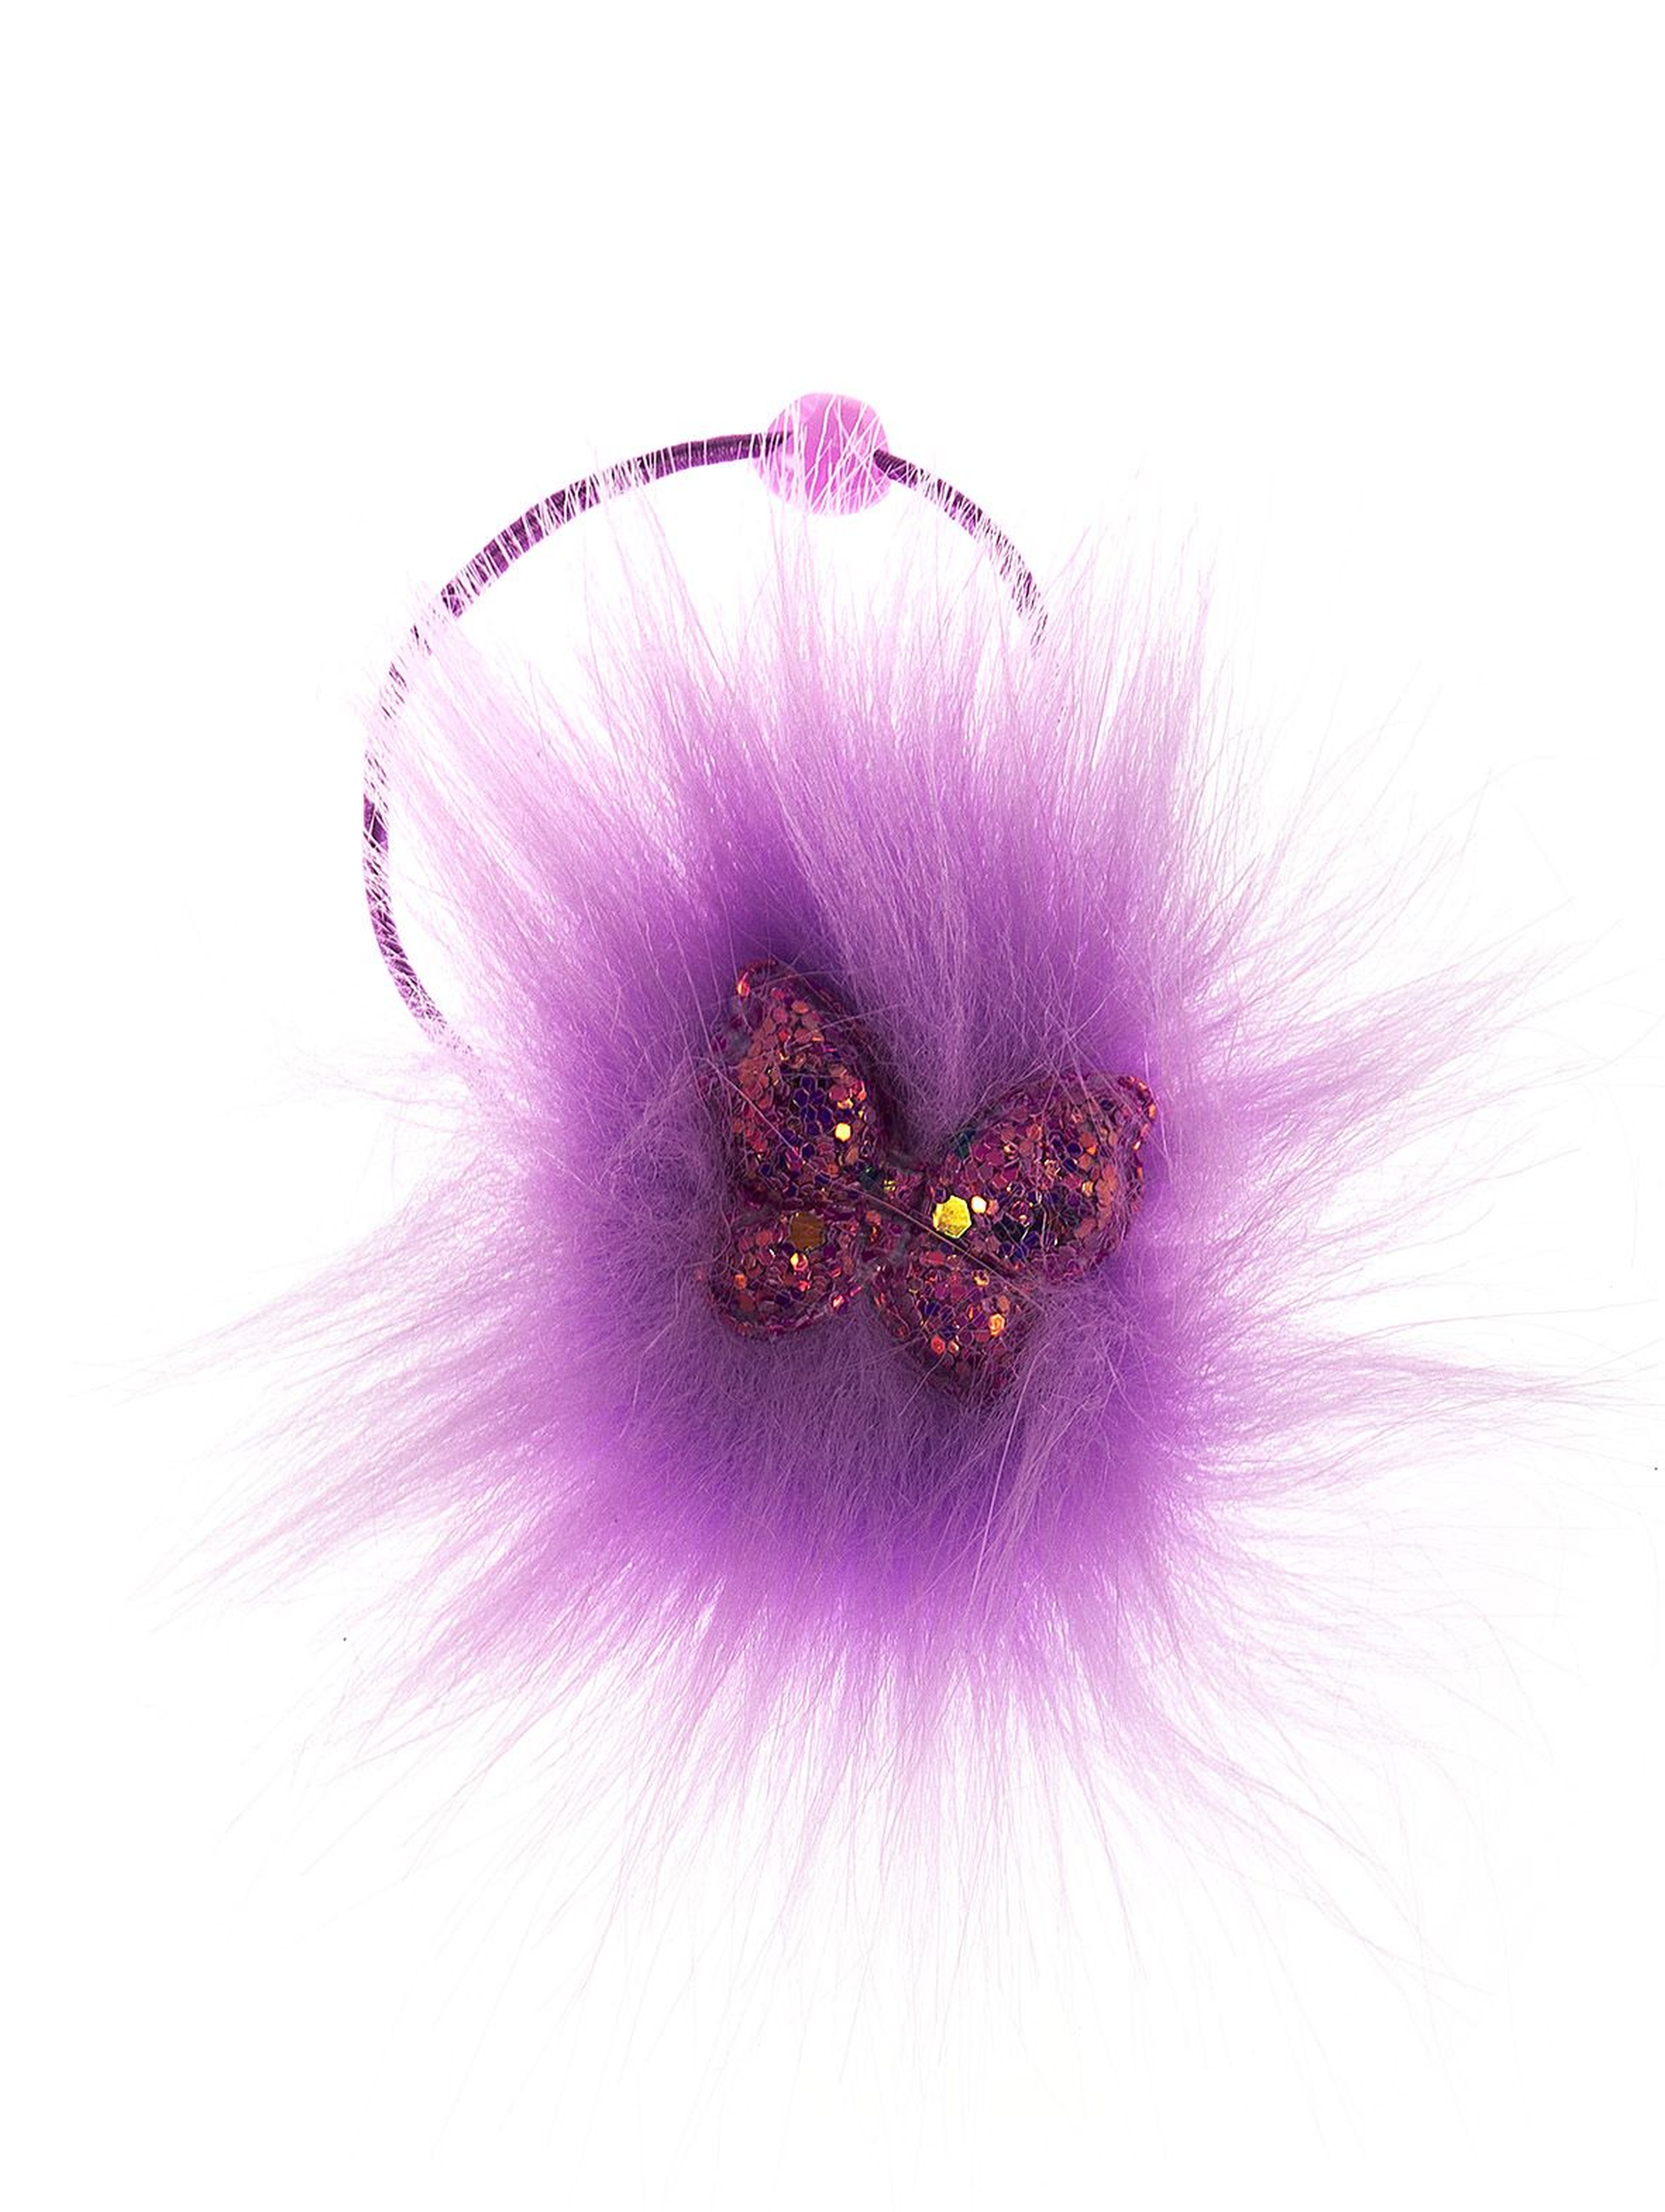 Ozdobna gumka do włosów- fioletowa z cekinowym motylem